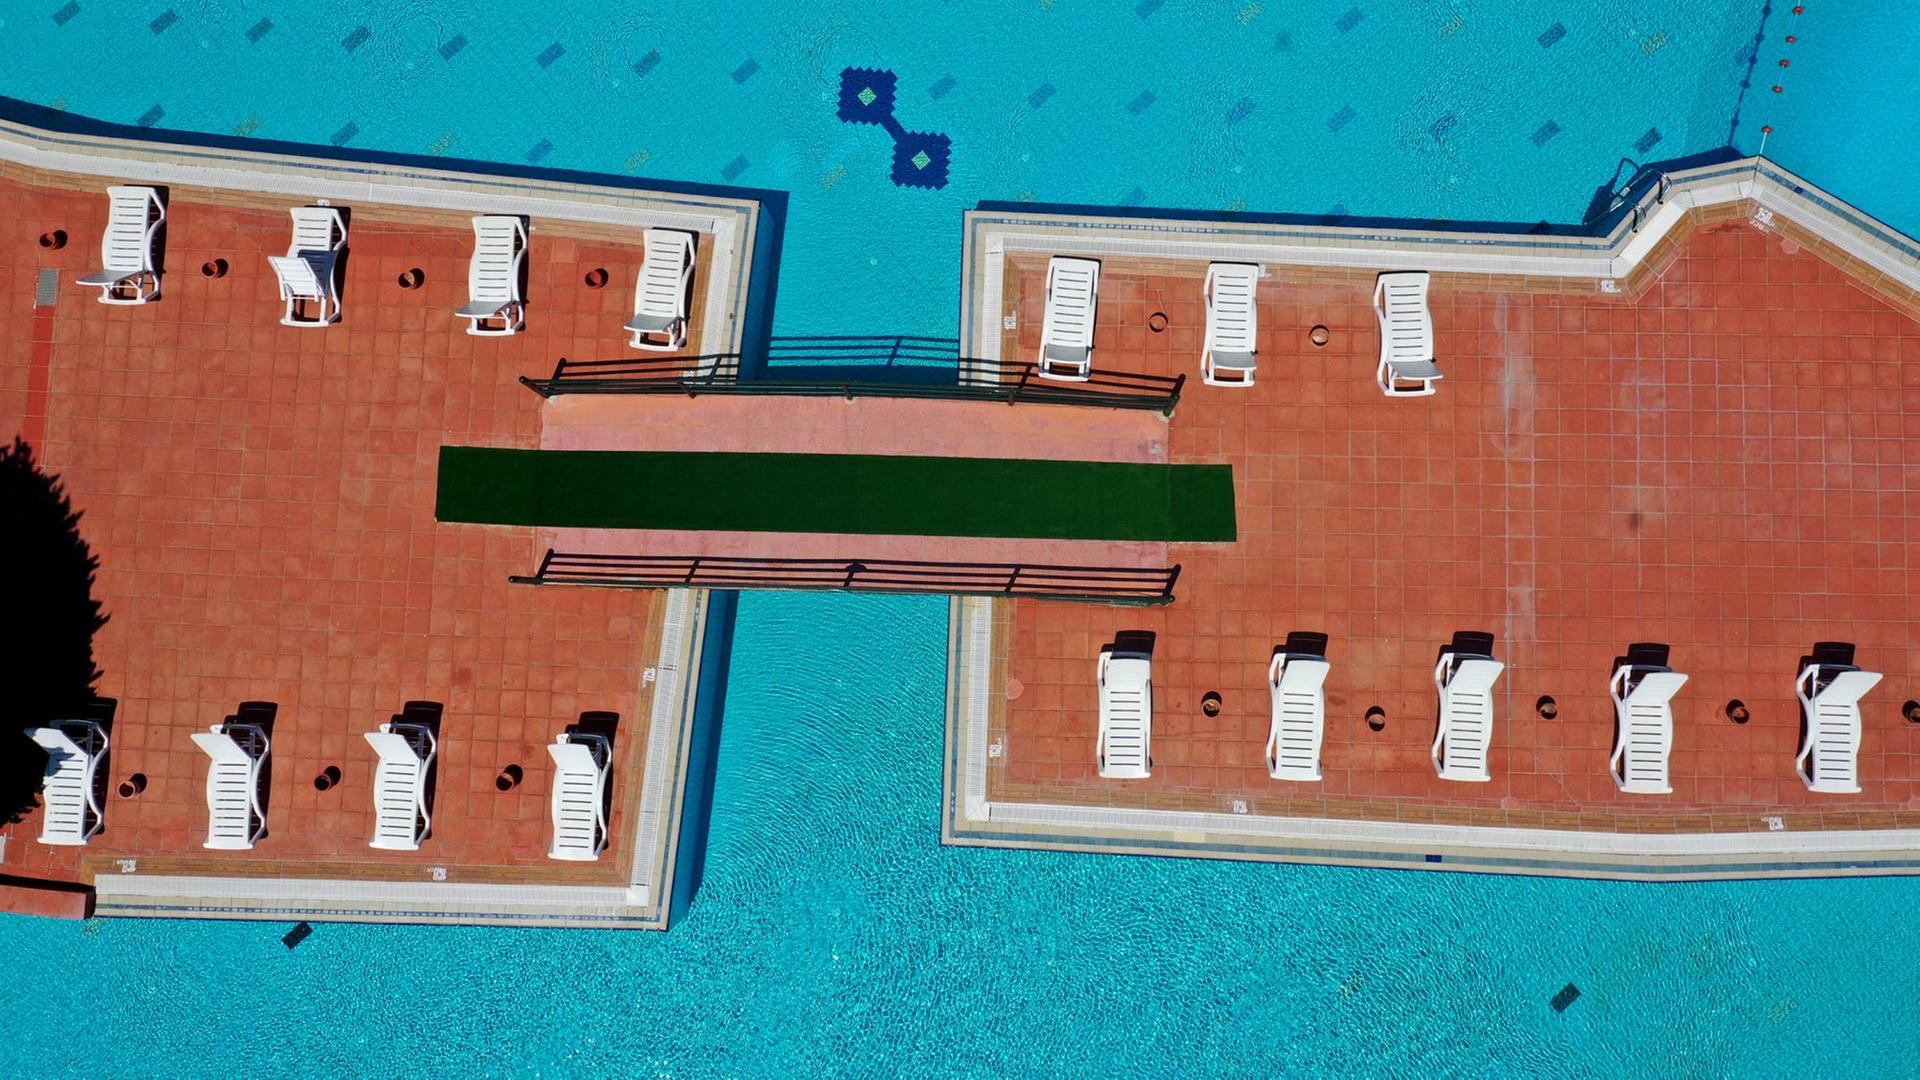 Luftaufnahme des Aquaparks in Kusadasi im türkischen Aydin mit leeren Sonnenliegen an einem leeren Pool, aufgestellt mit jeweils 1,50 Meter Abstand, aufgenommen am 29. Juni 2020.